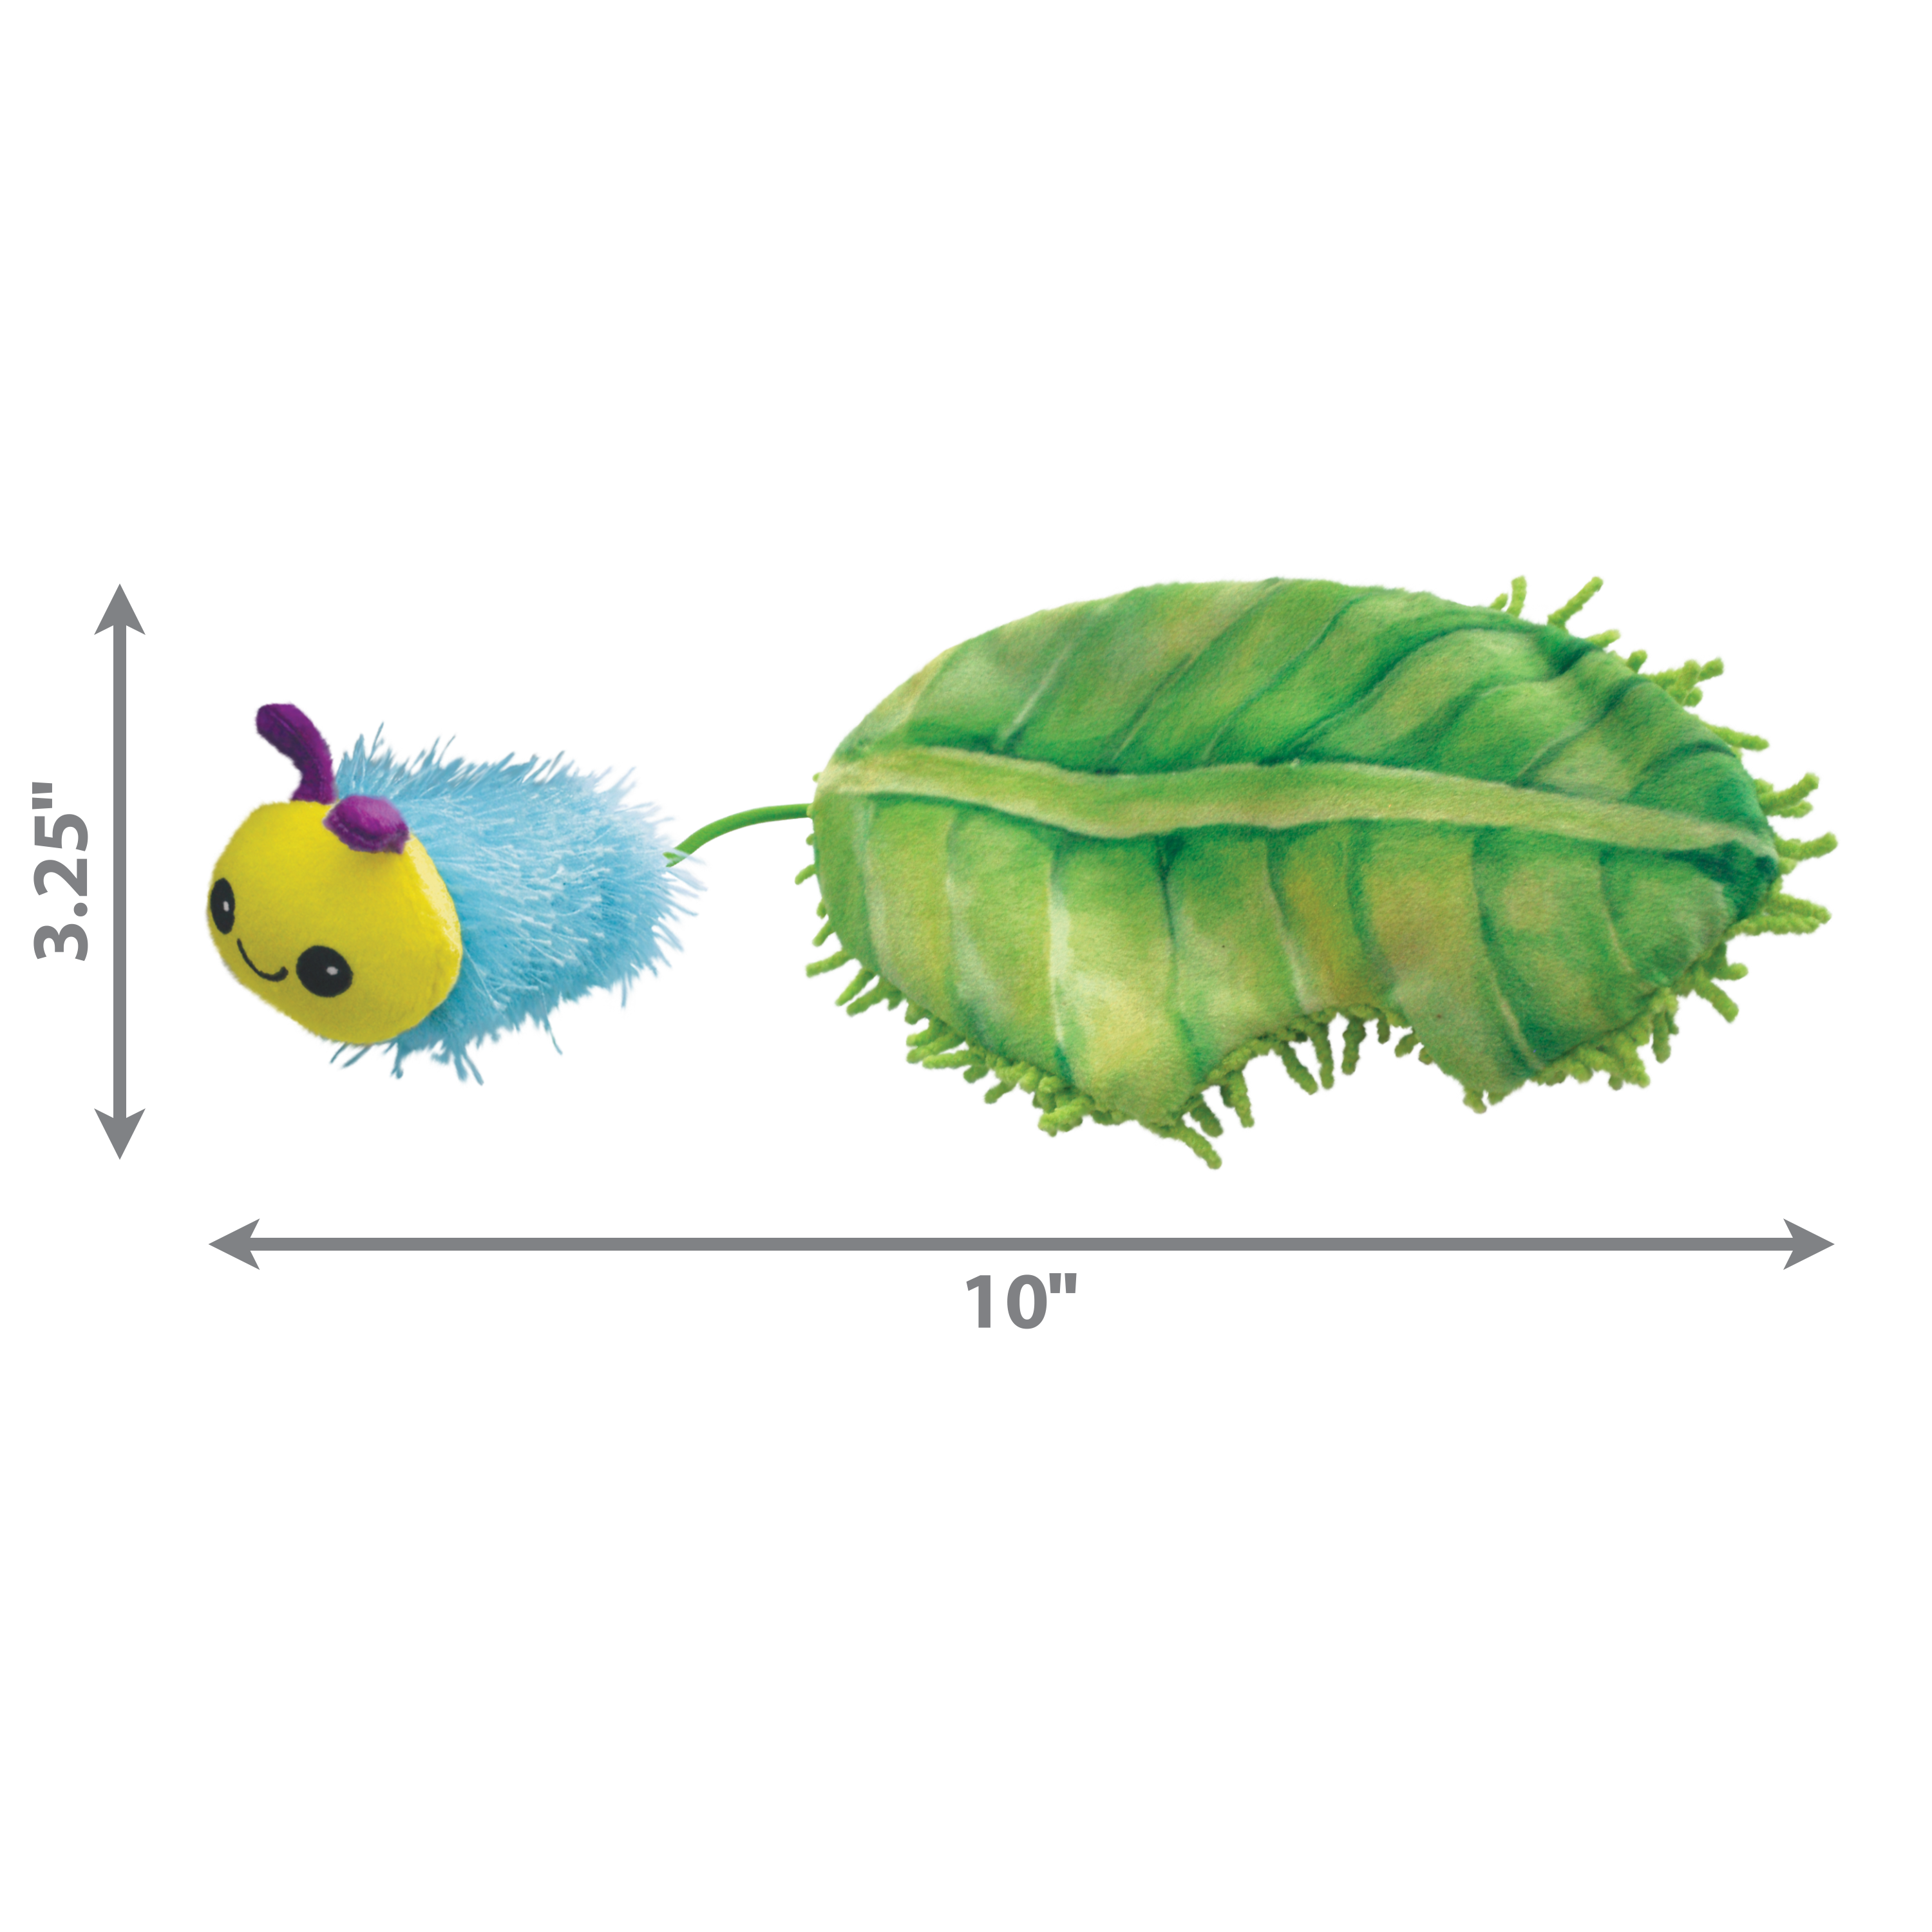 Kong Flingaroo Caterpillar - Juguetes para Gatos